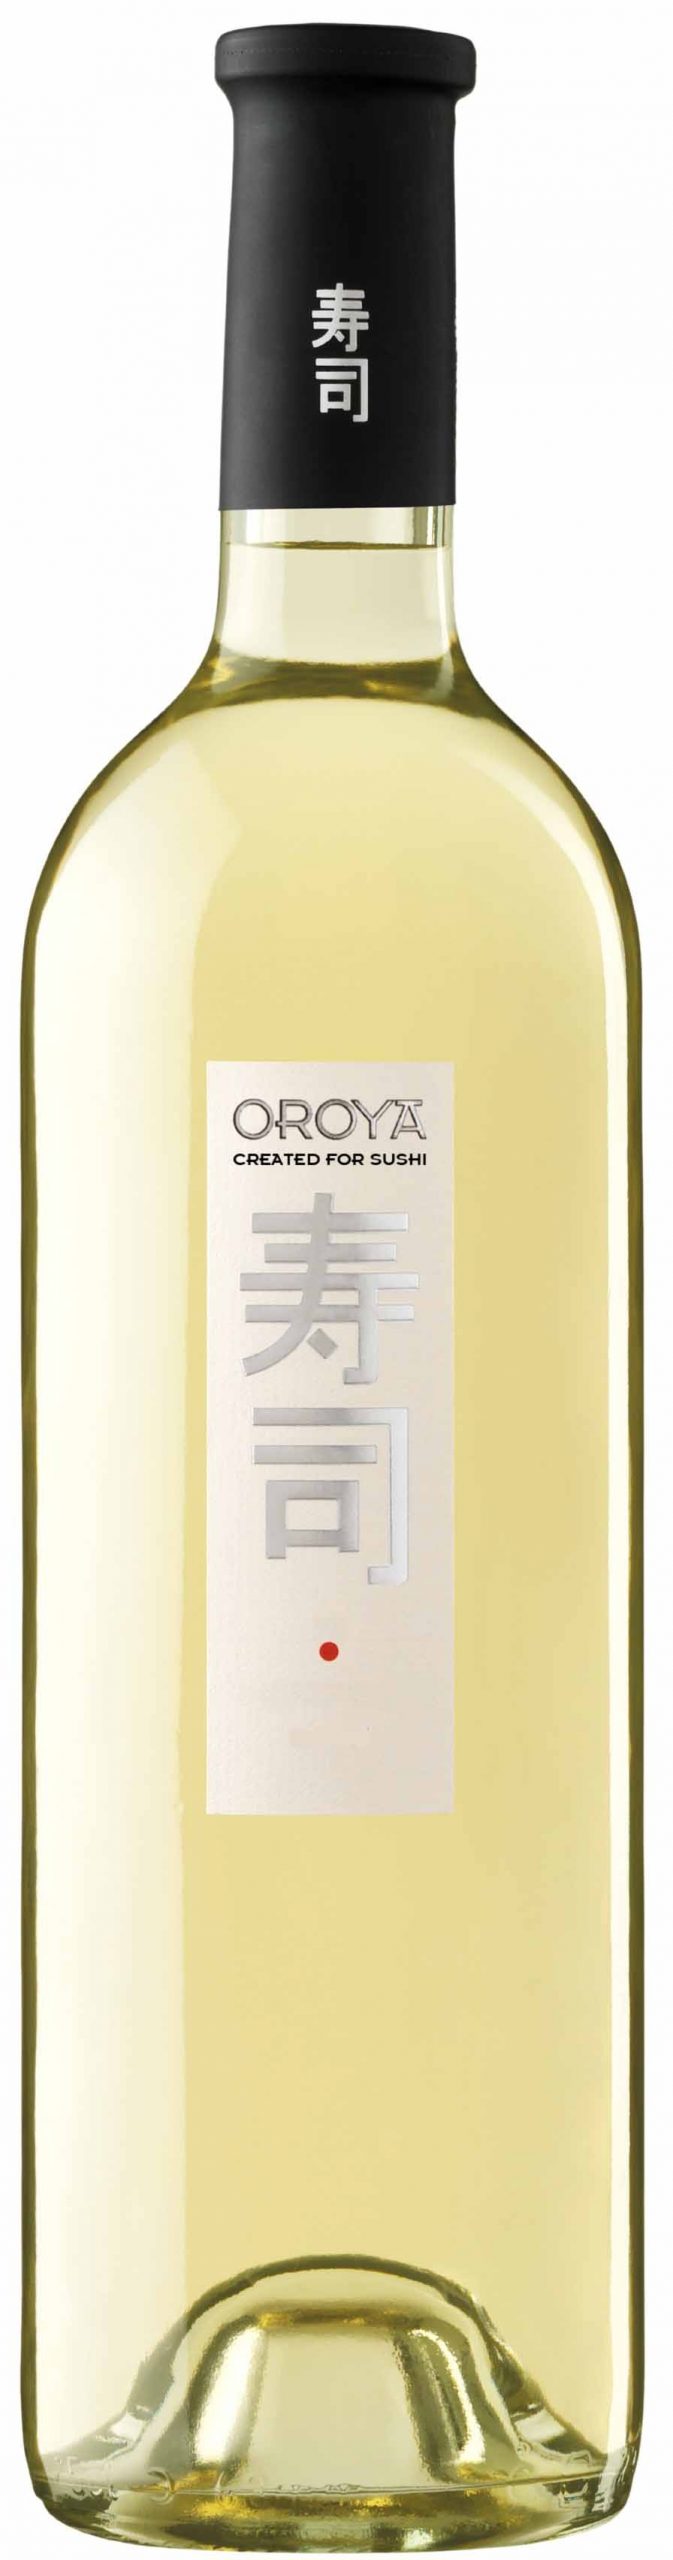 OROYA SUSHI WINE